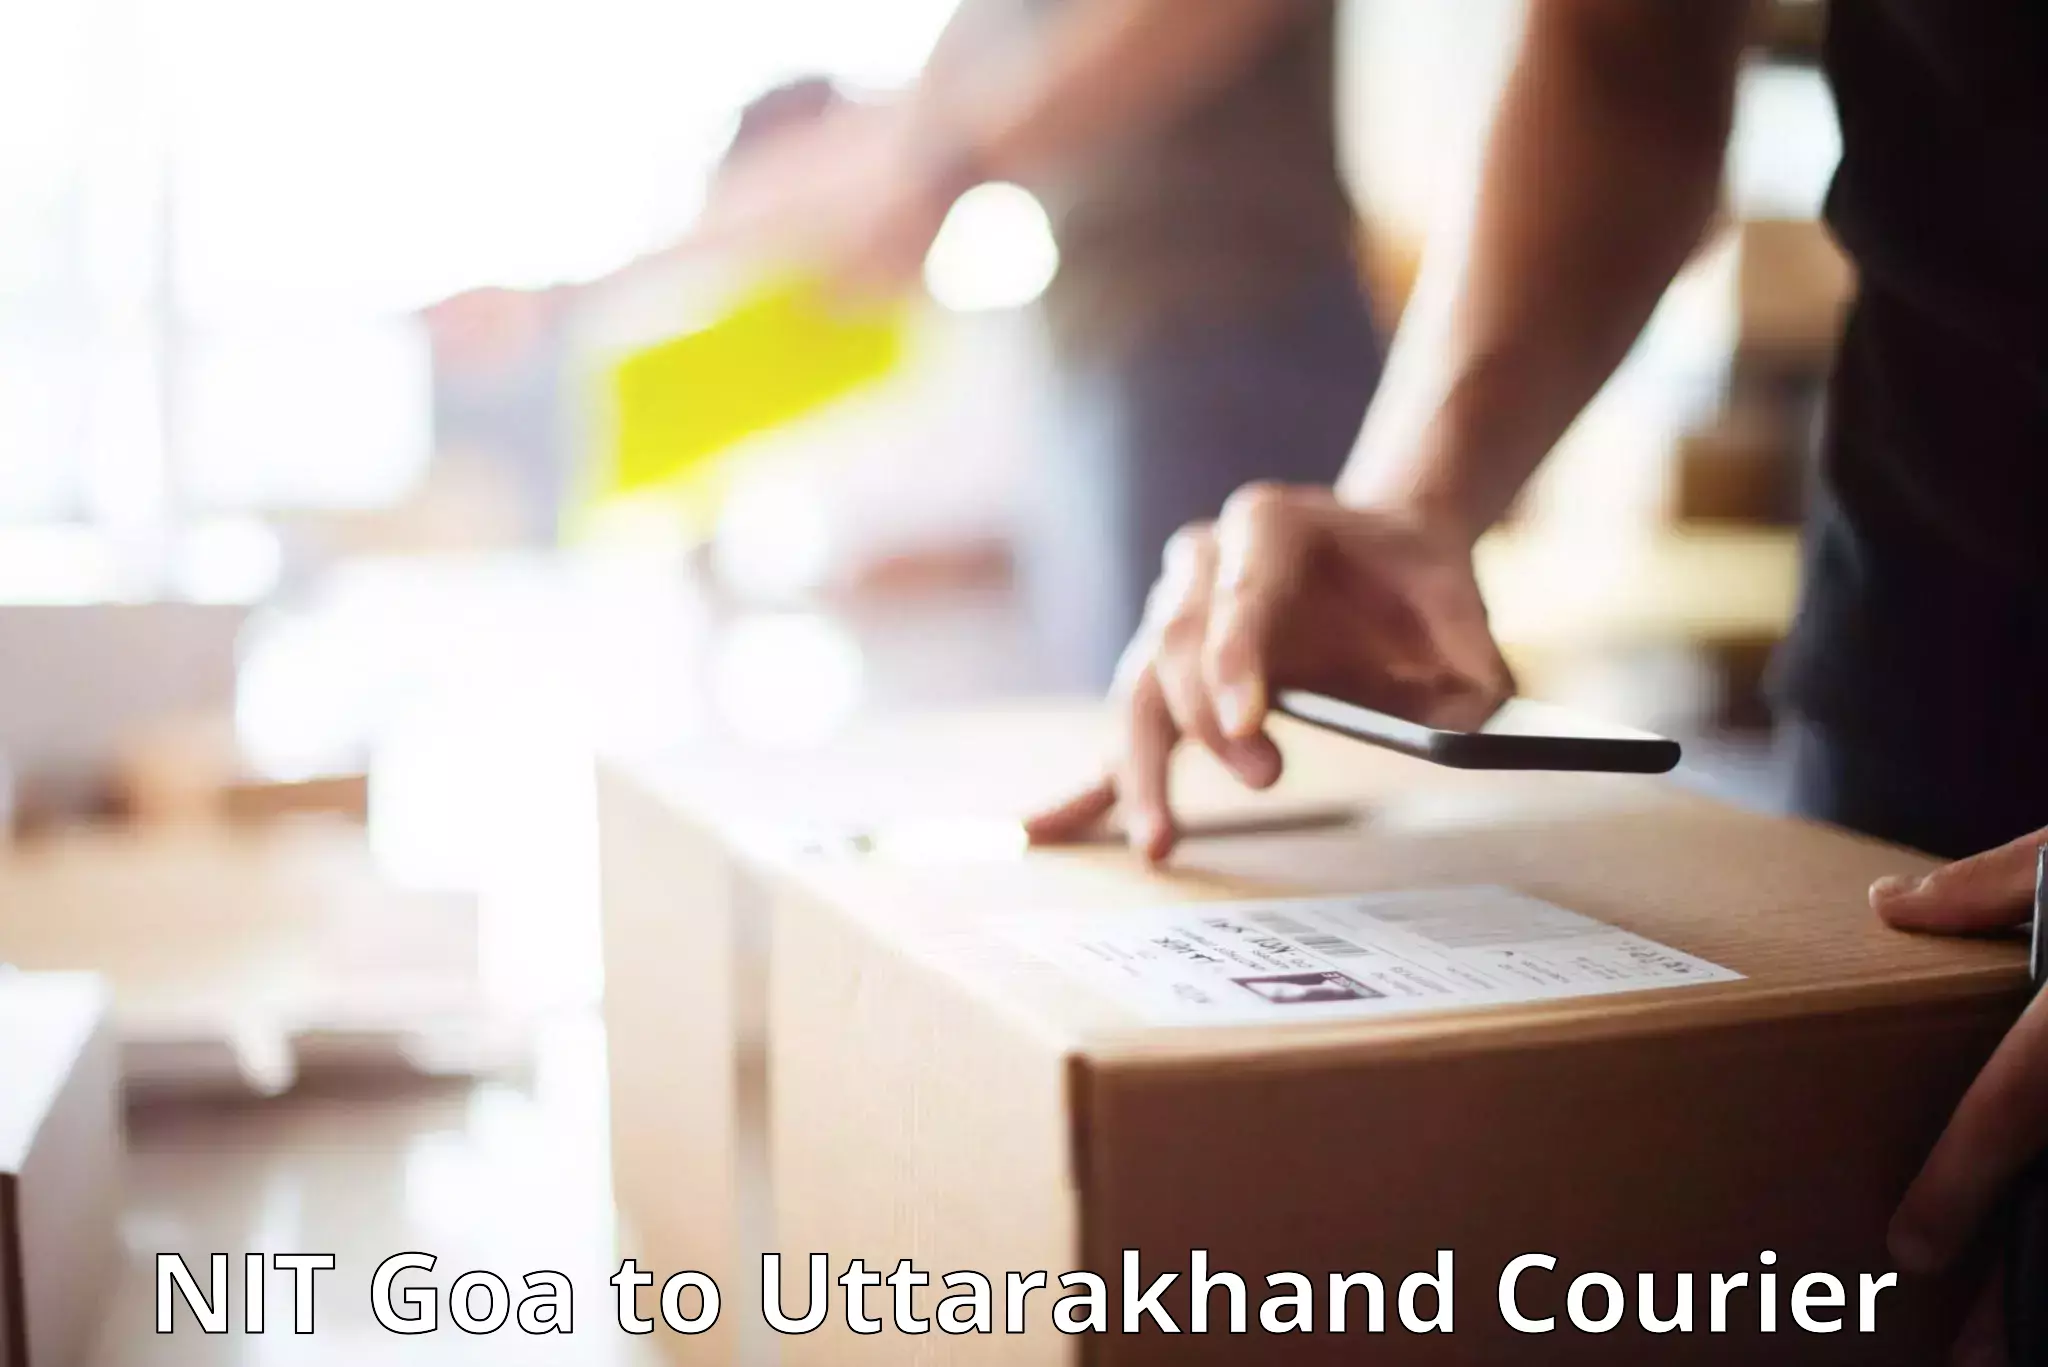 Luggage shipment tracking NIT Goa to Uttarakhand